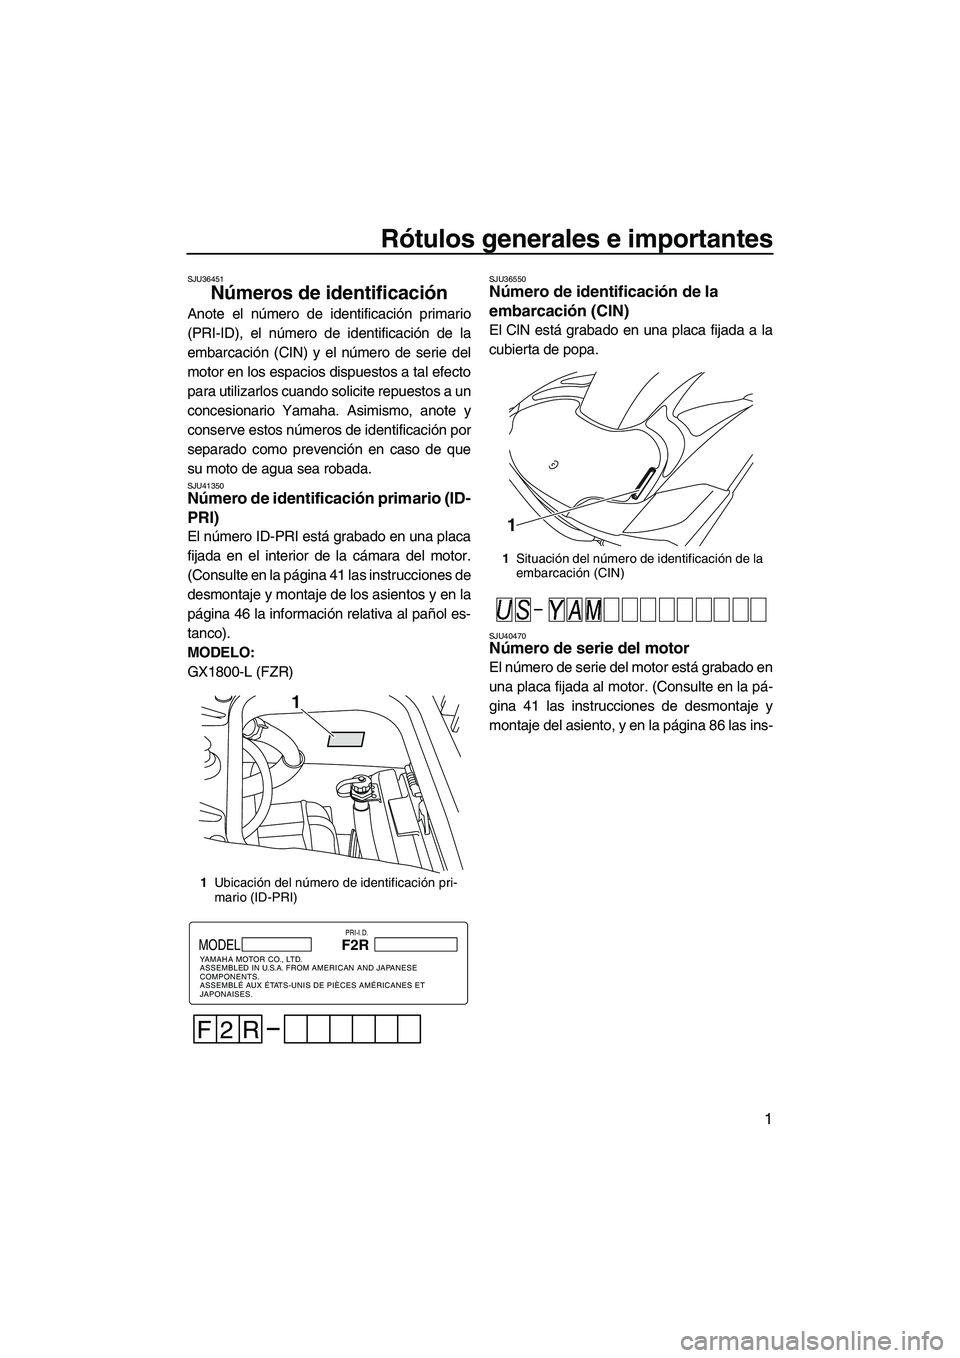 YAMAHA FZR 2012  Manuale de Empleo (in Spanish) Rótulos generales e importantes
1
SJU36451
Números de identificación 
Anote el número de identificación primario
(PRI-ID), el número de identificación de la
embarcación (CIN) y el número de s